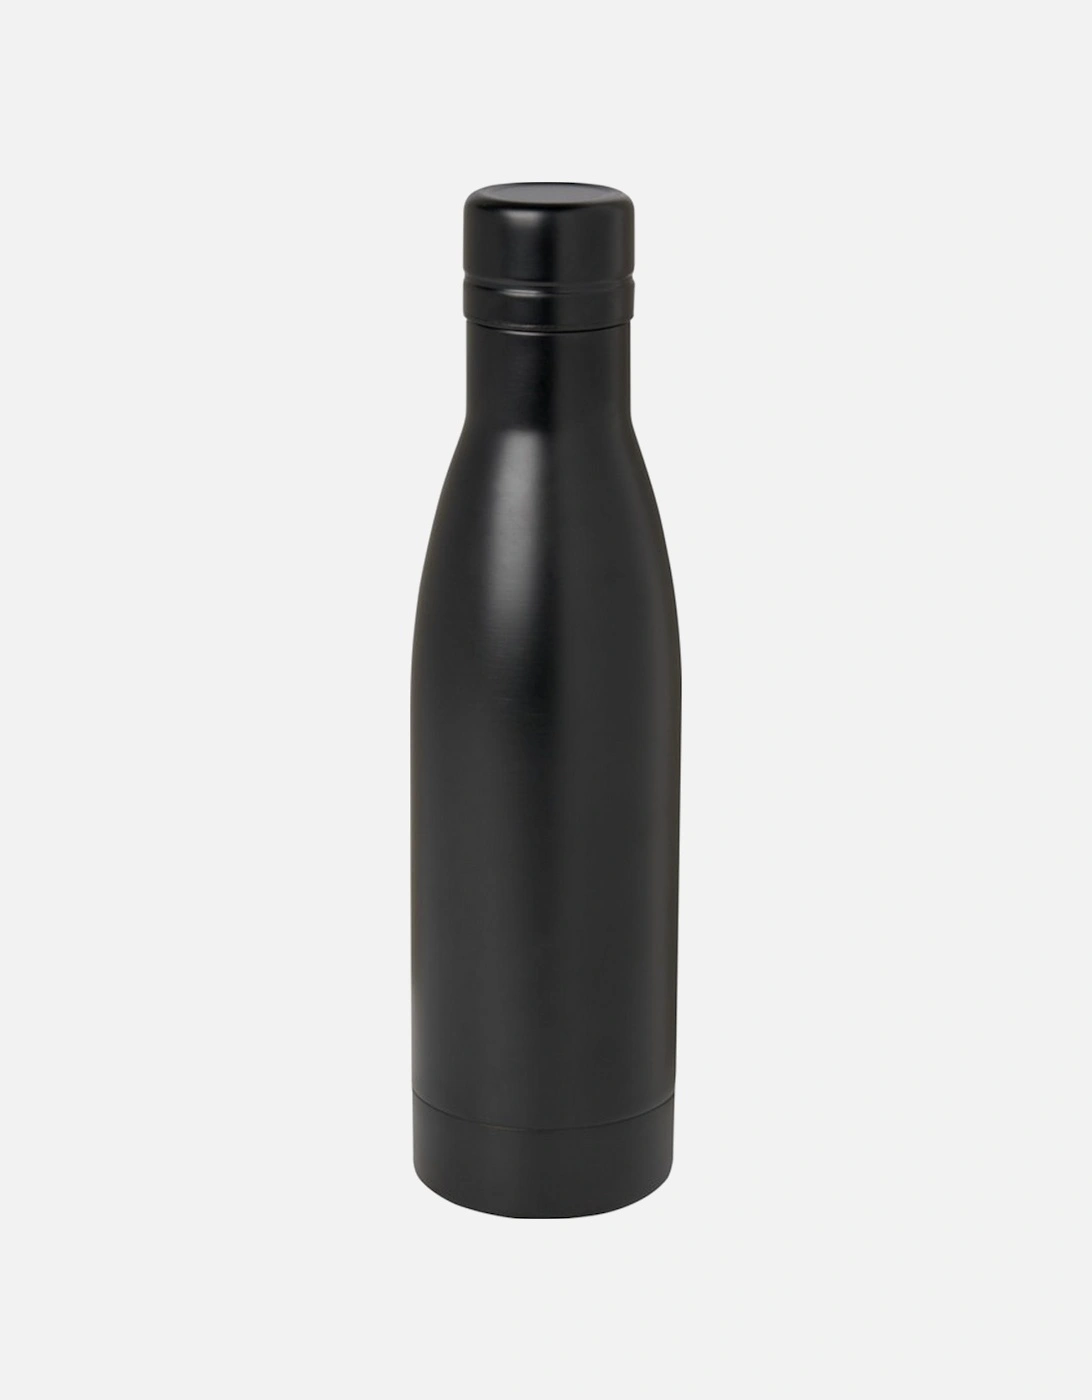 Vasa Plain Stainless Steel 500ml Water Bottle